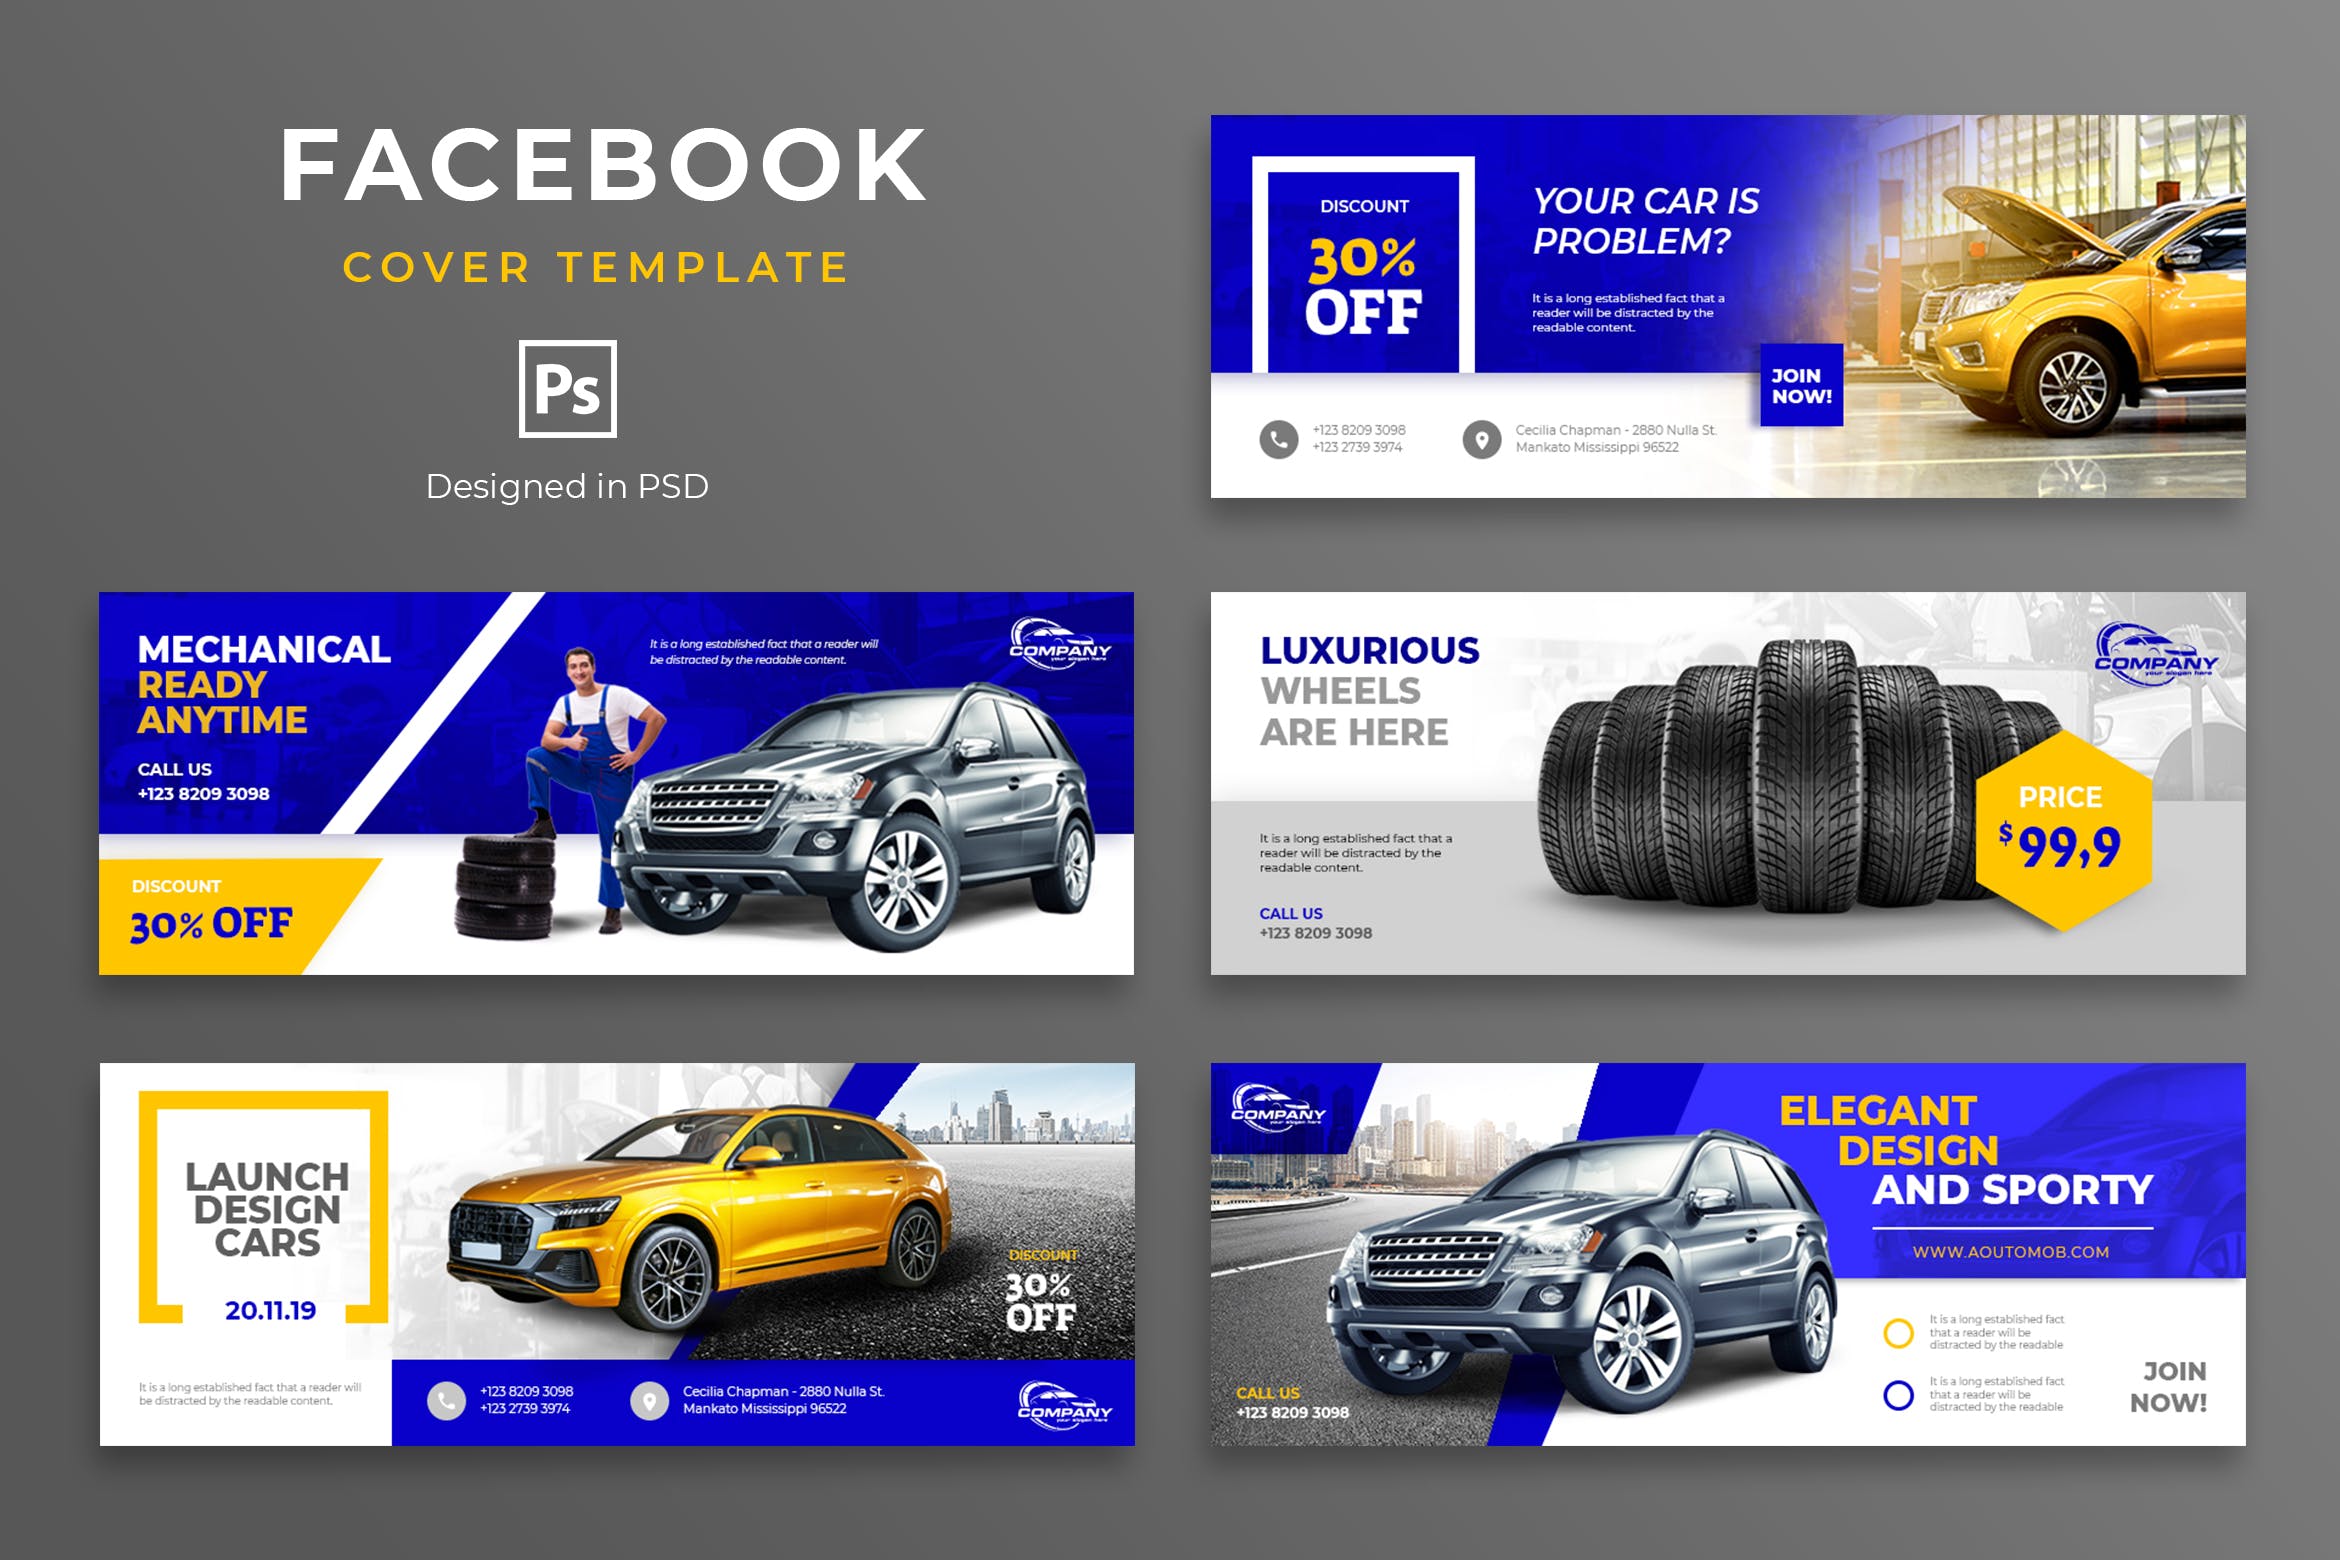 汽车品牌Facebook营销推广主页封面设计模板素材中国精选 Automotive Facebook Cover Template插图